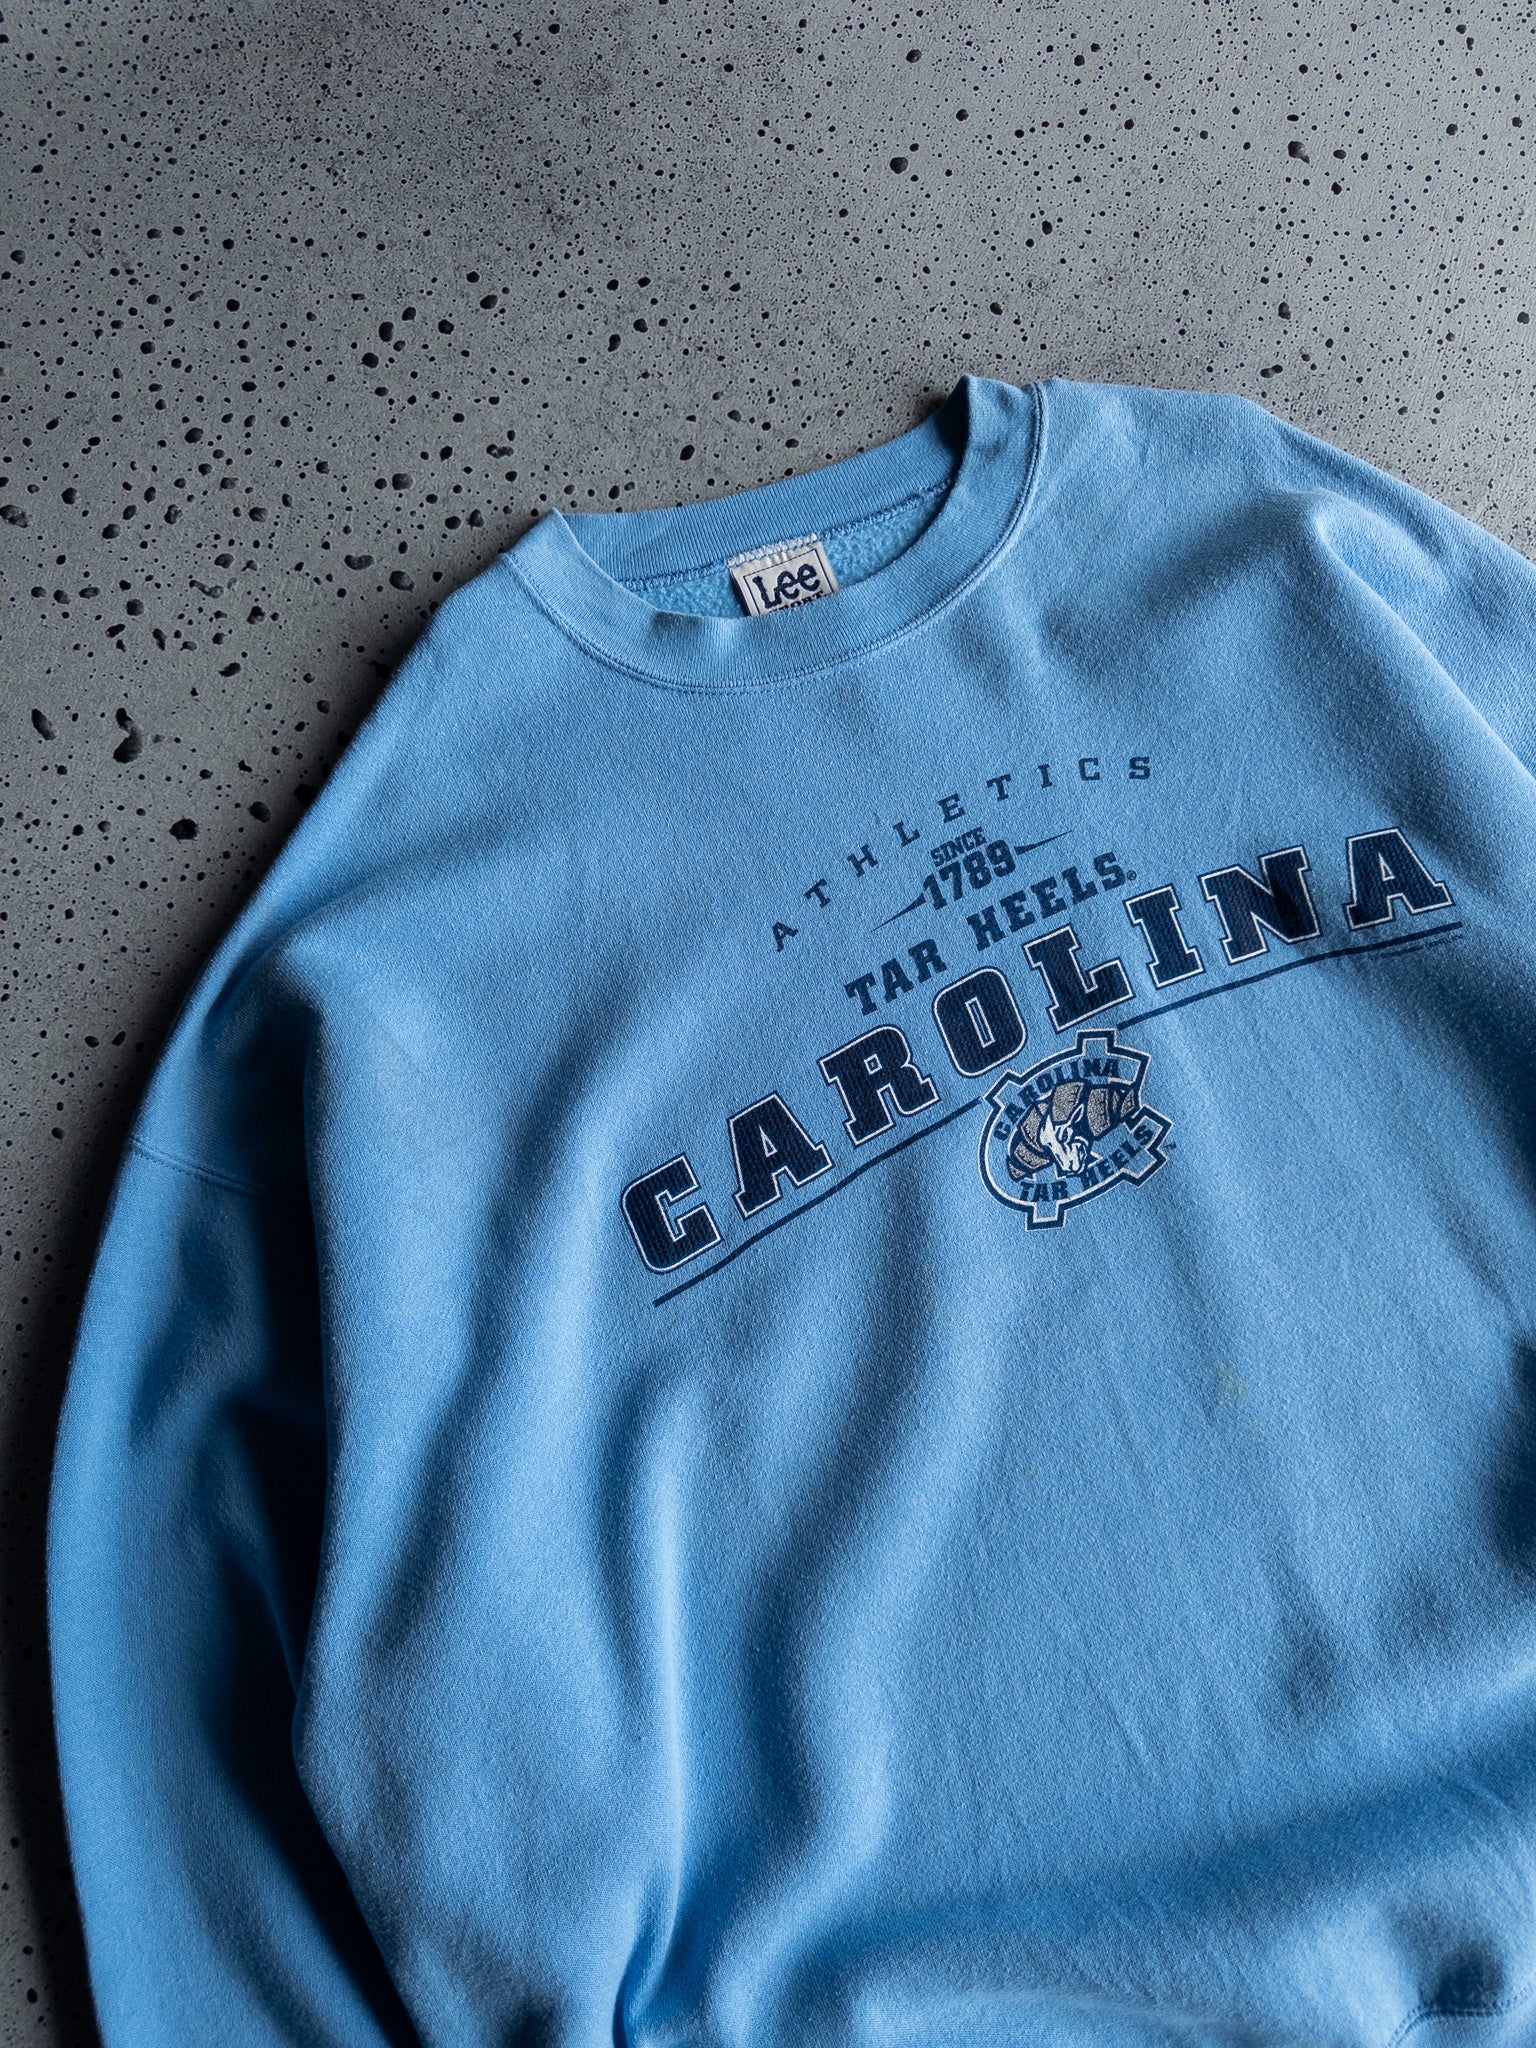 Vintage North Carolina Tar Heels Sweatshirt (XXL)